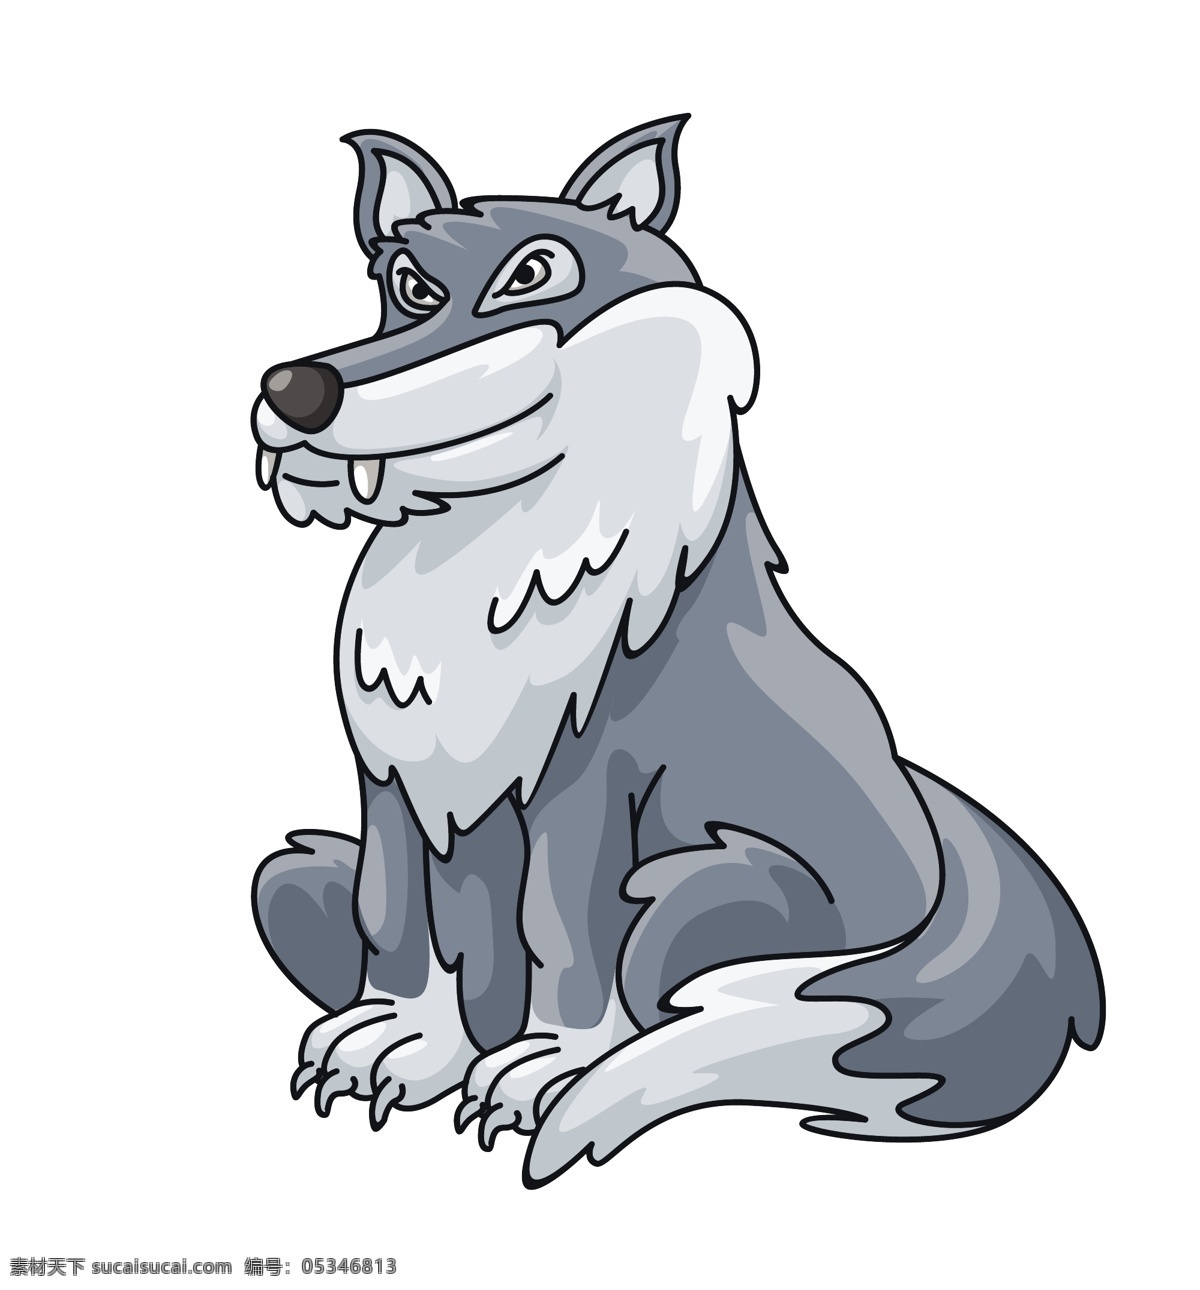 卡通 雪 狼 可爱 动物 矢量 模板下载 素材图片 动物矢量 各种 矢量图 txt